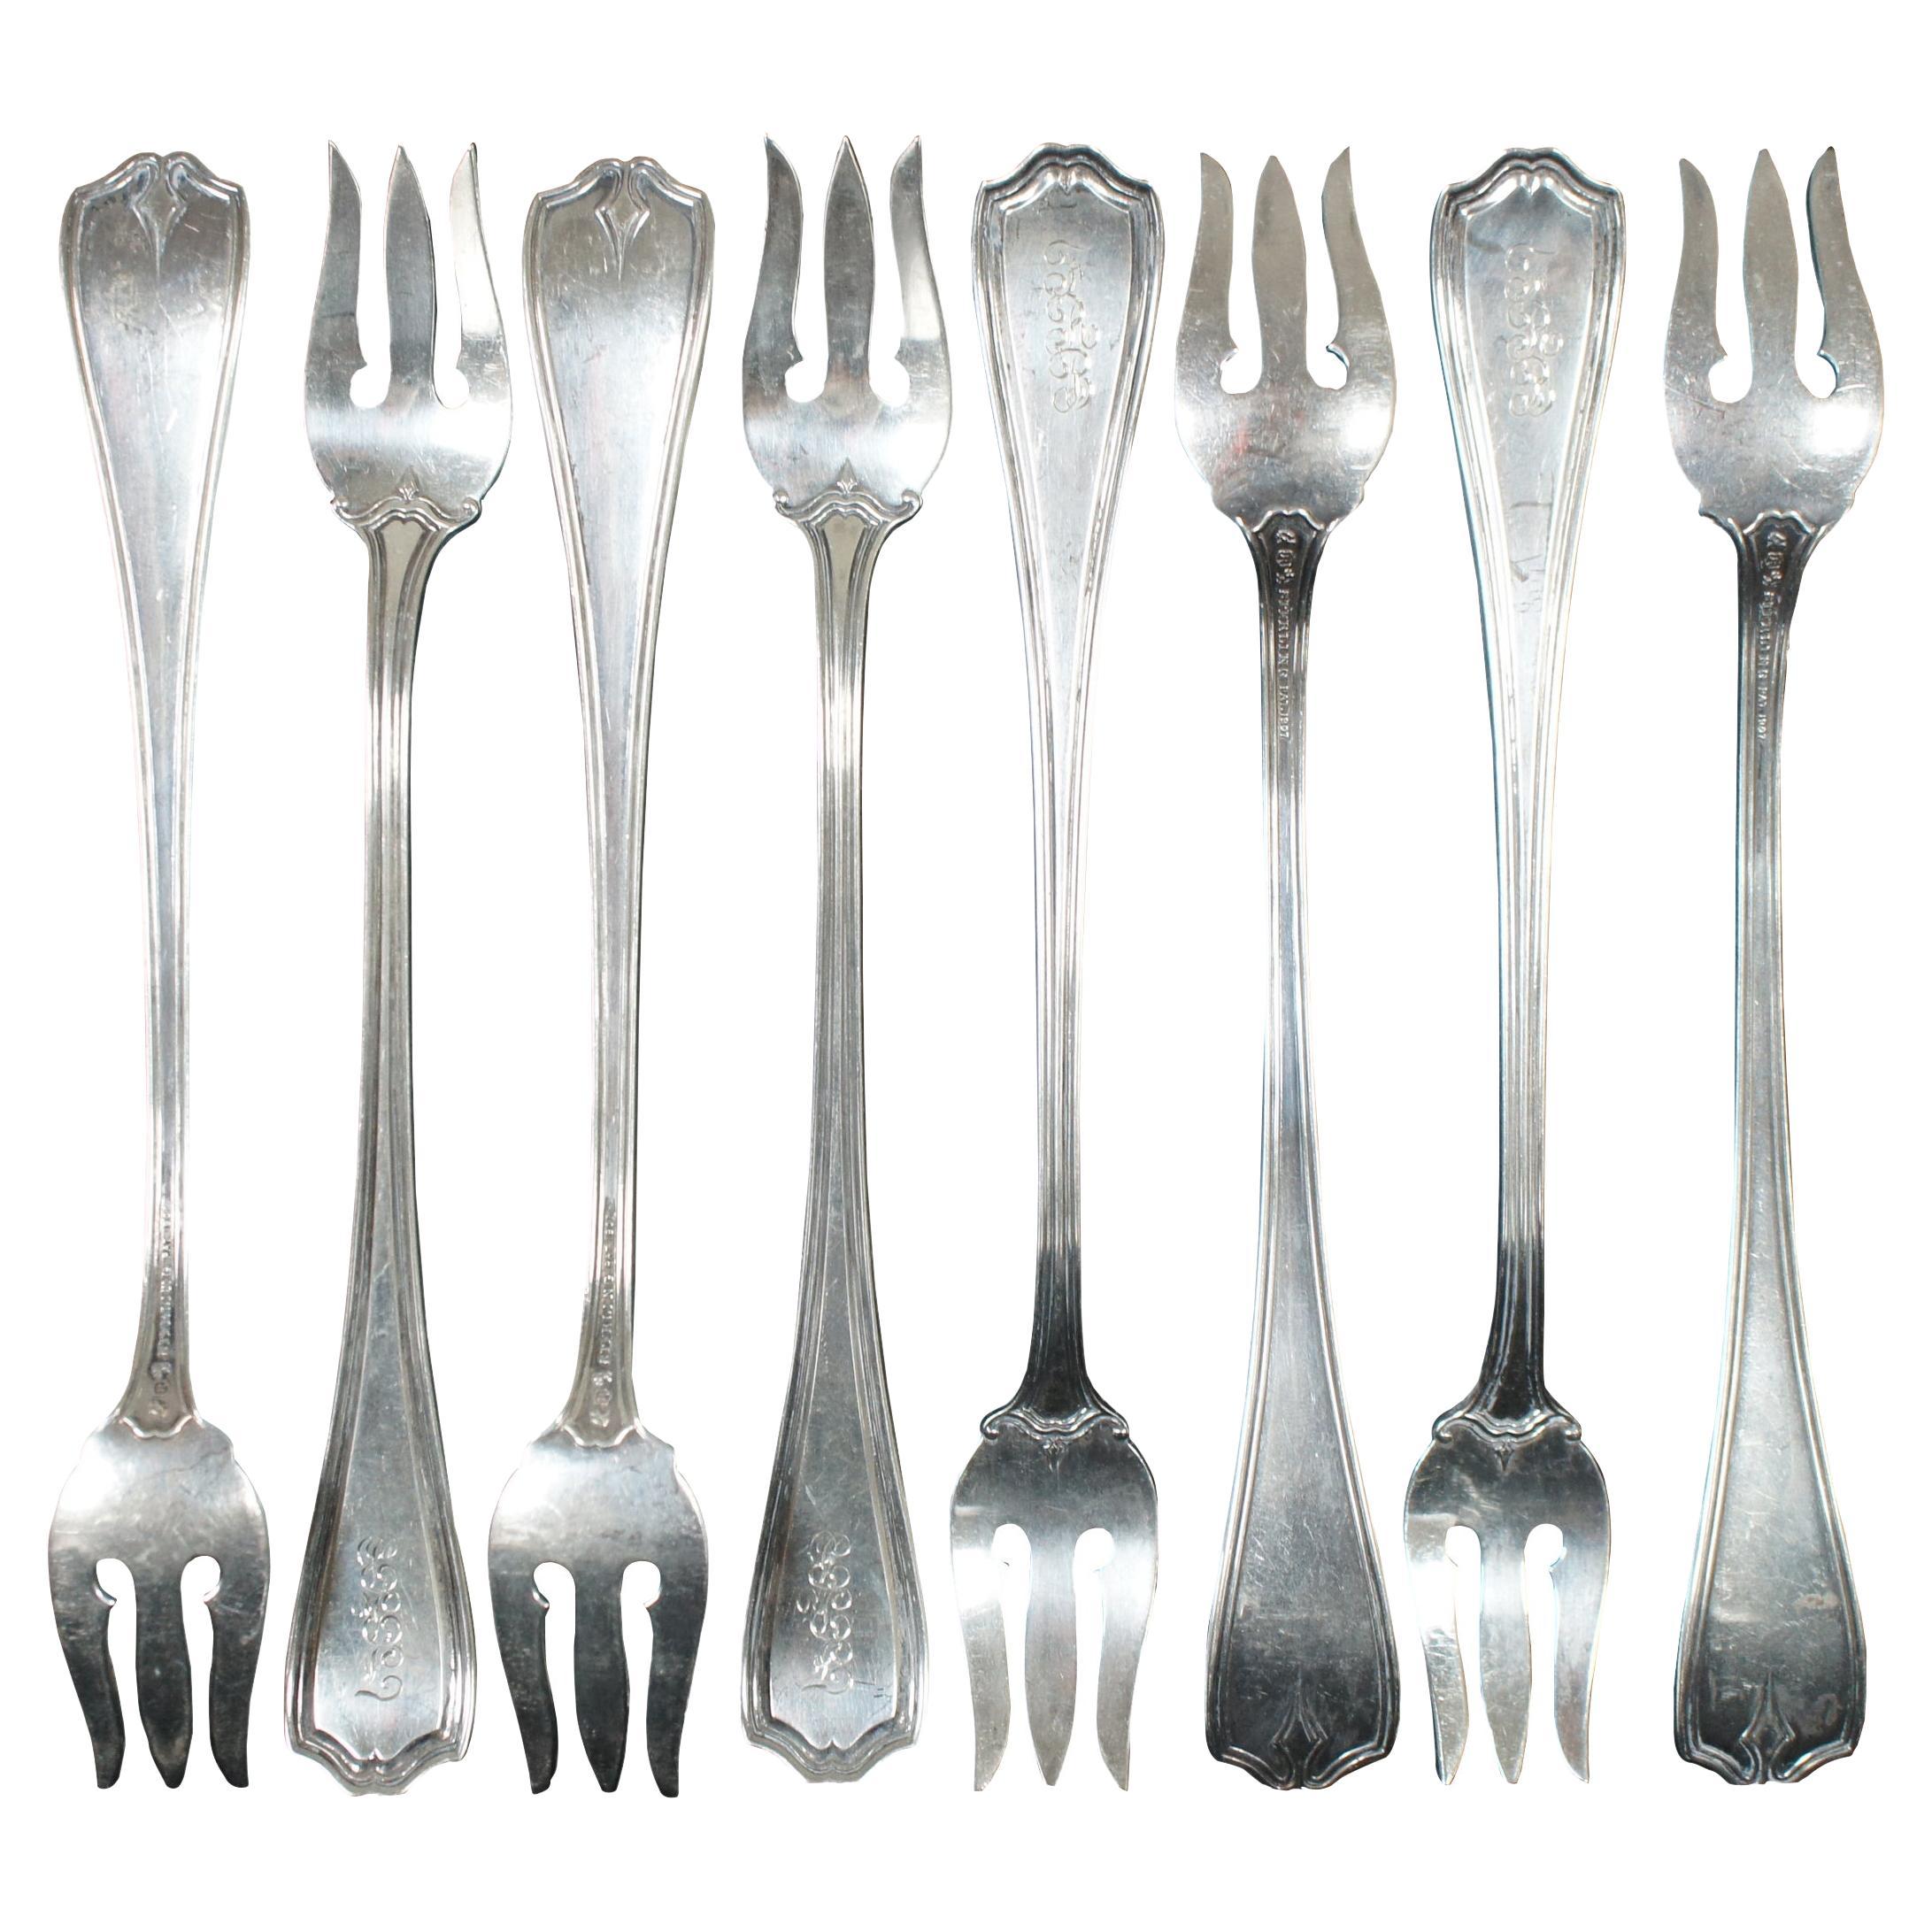 8 Reed & Barton Antique Sterling Silver Hepplewhite Engraved Cocktail Forks